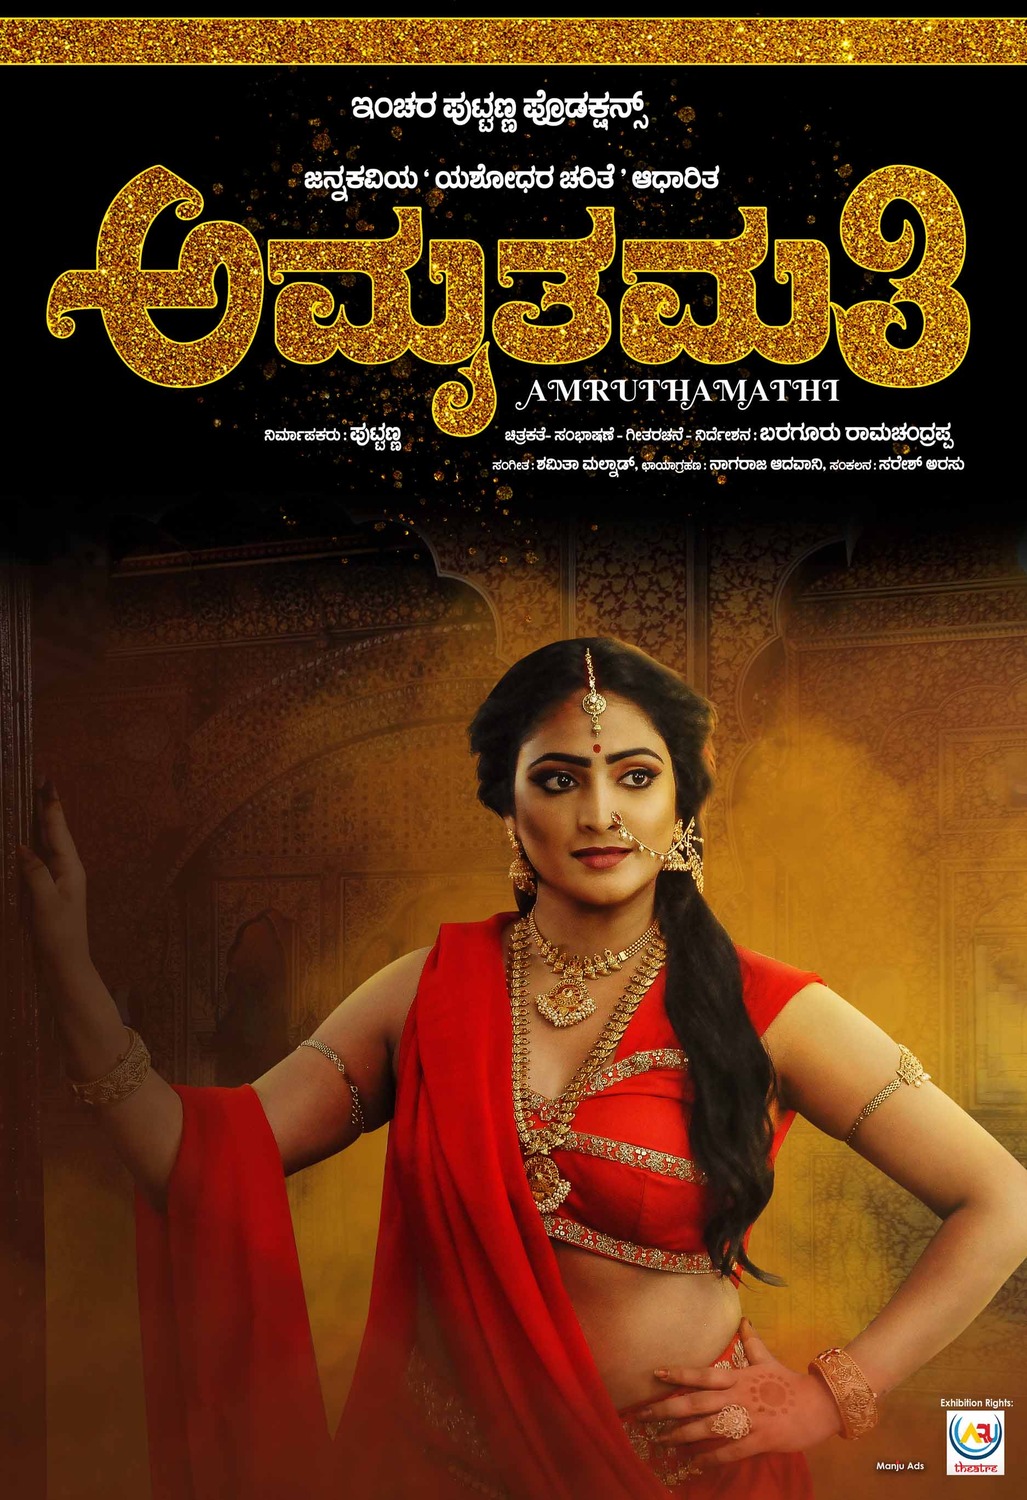 Extra Large Movie Poster Image for Amruthamathi (#8 of 10)